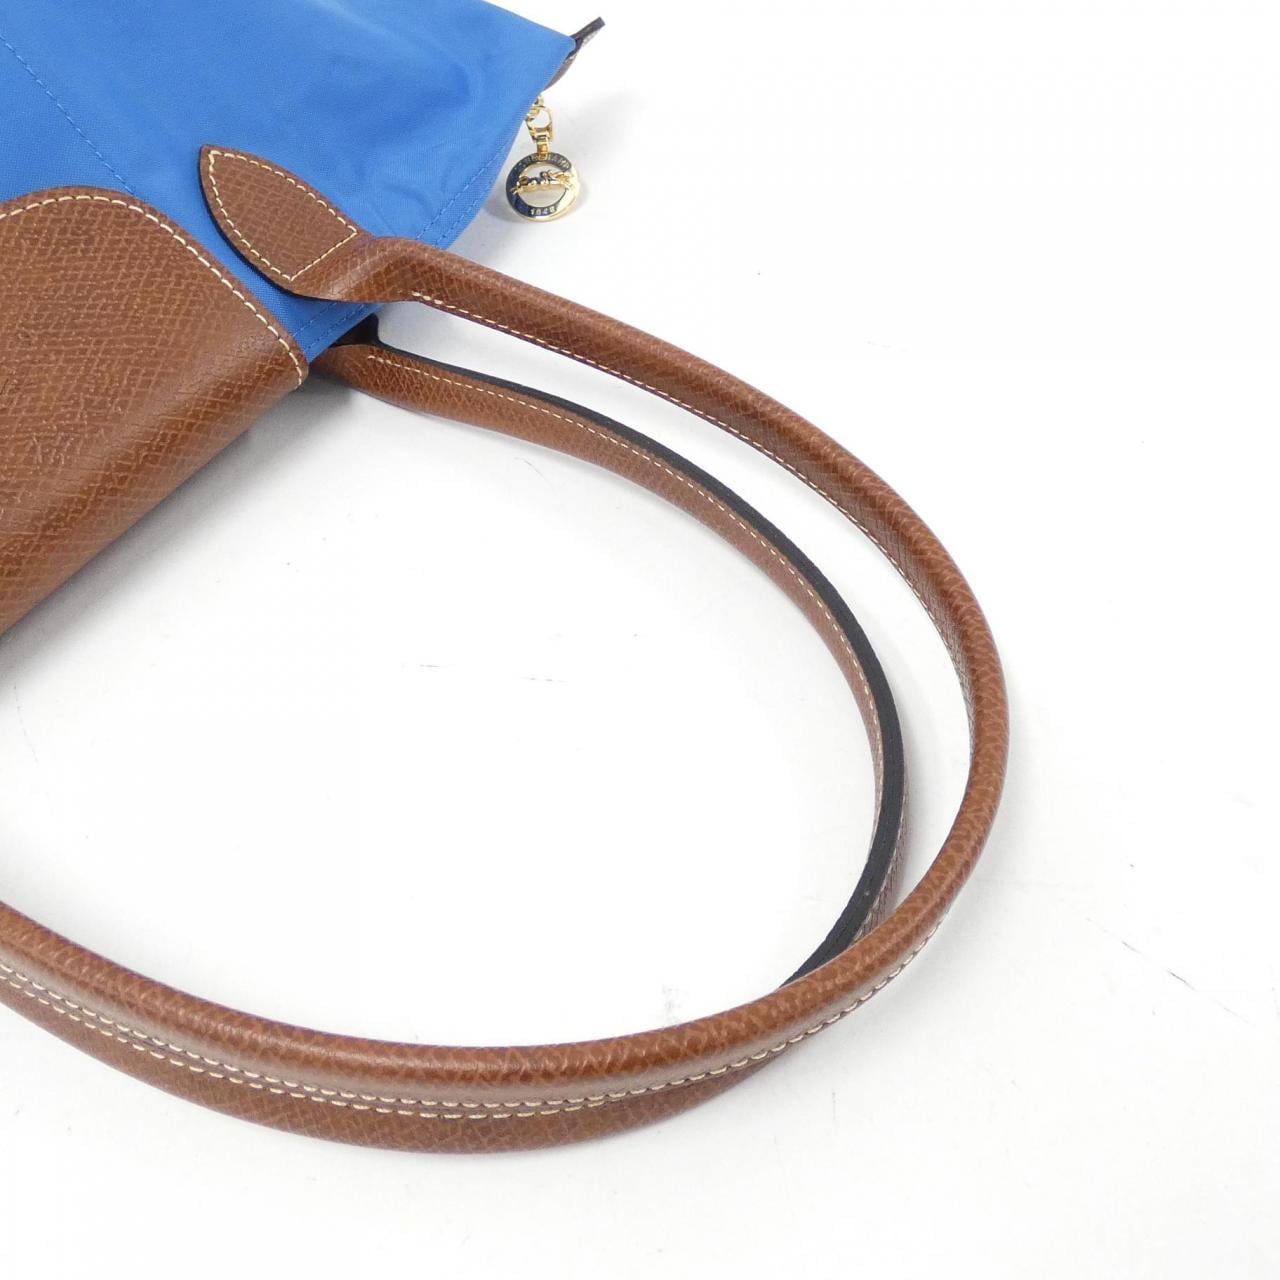 [BRAND NEW] Longchamp Le Pliage M 2605 089 Shoulder Bag